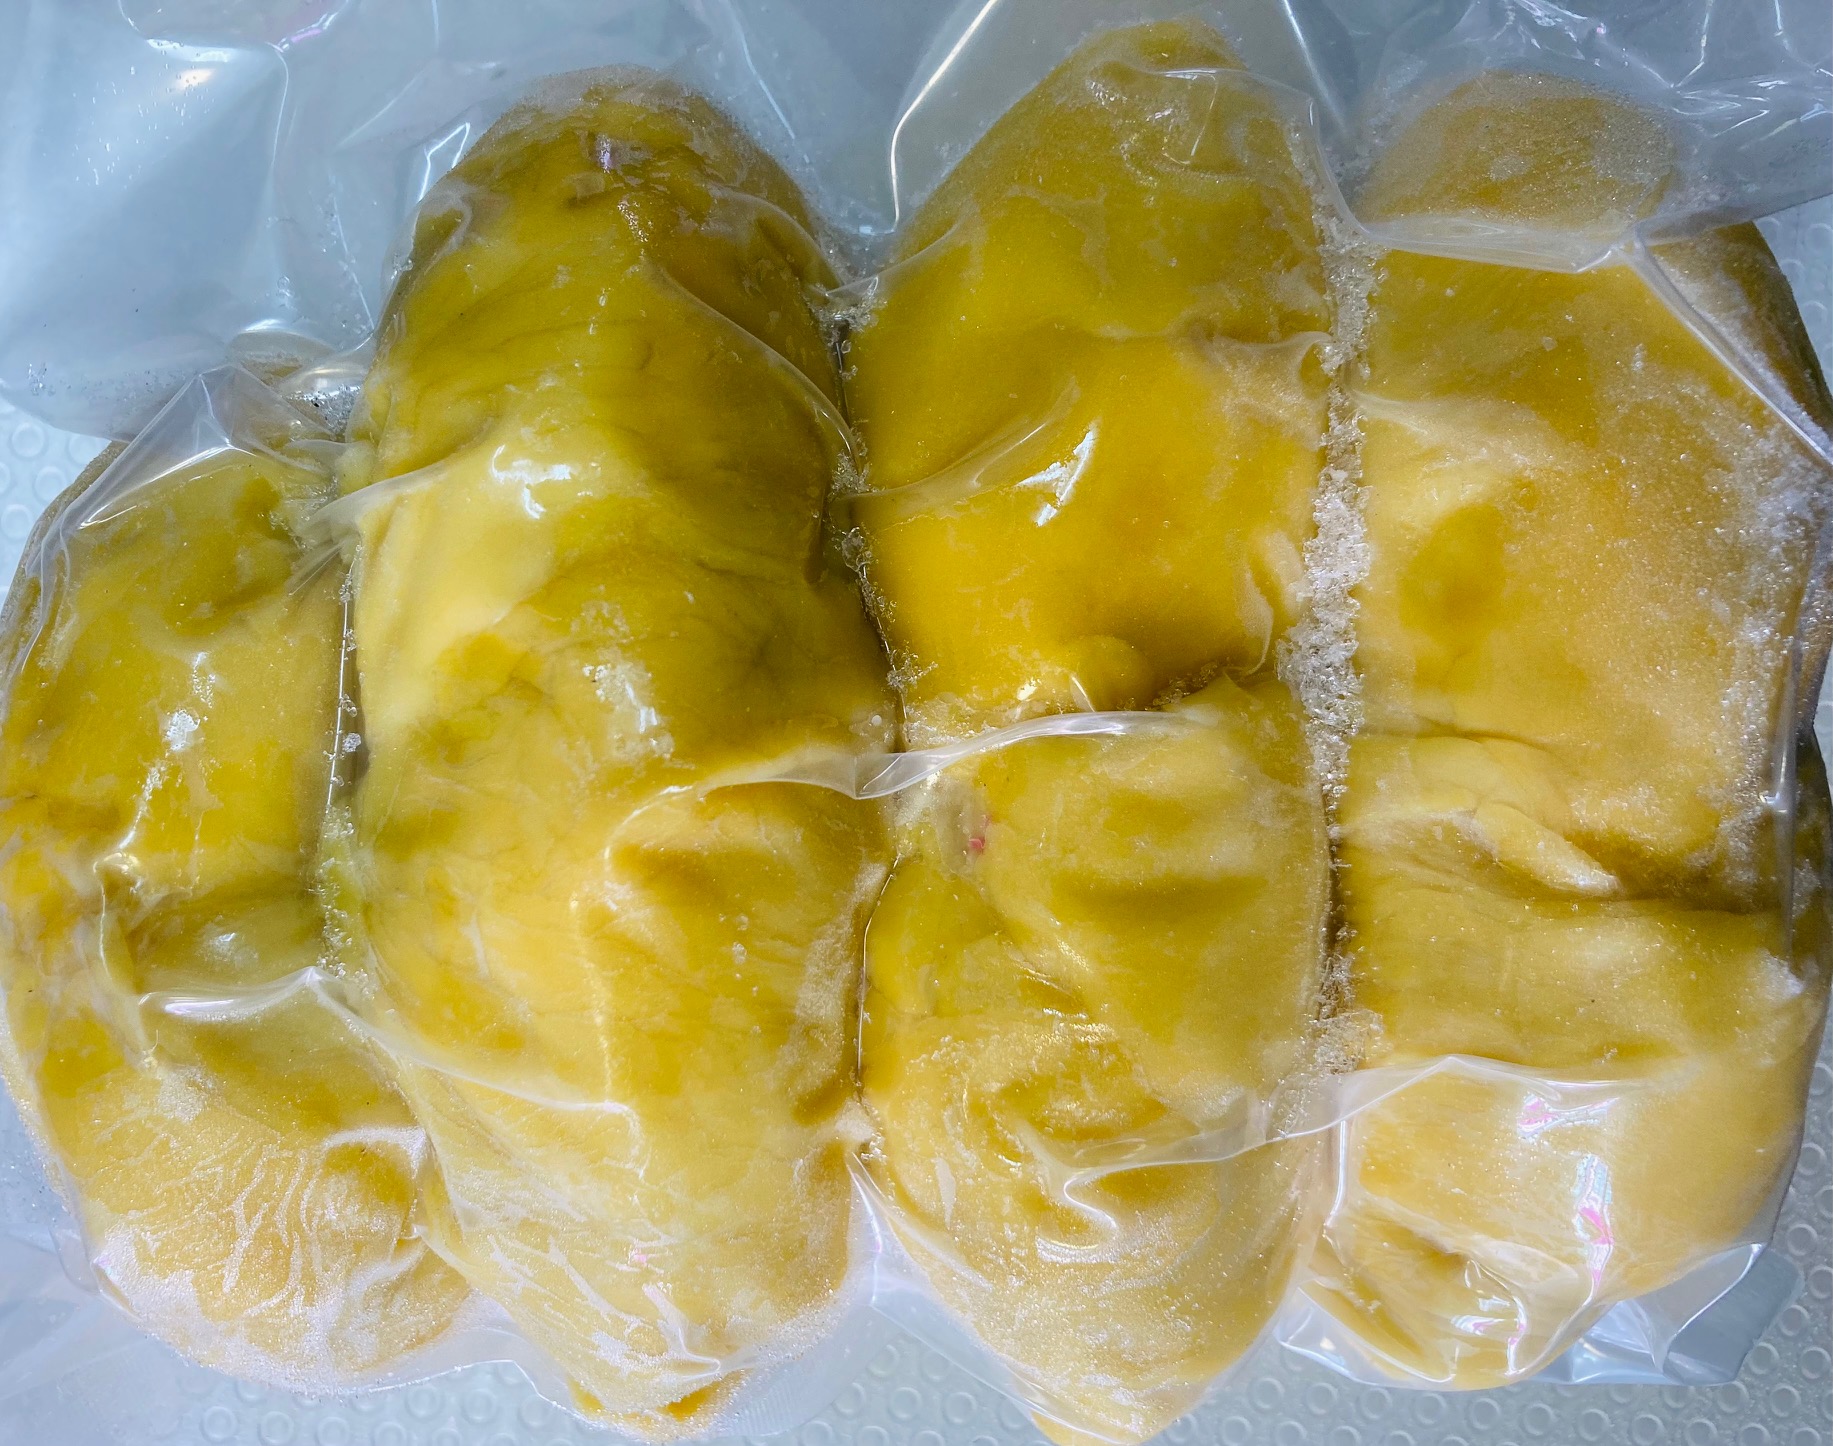 ドリアン 冷凍 榴蓮 500g×4袋 冷凍フルーツ フィリピン産